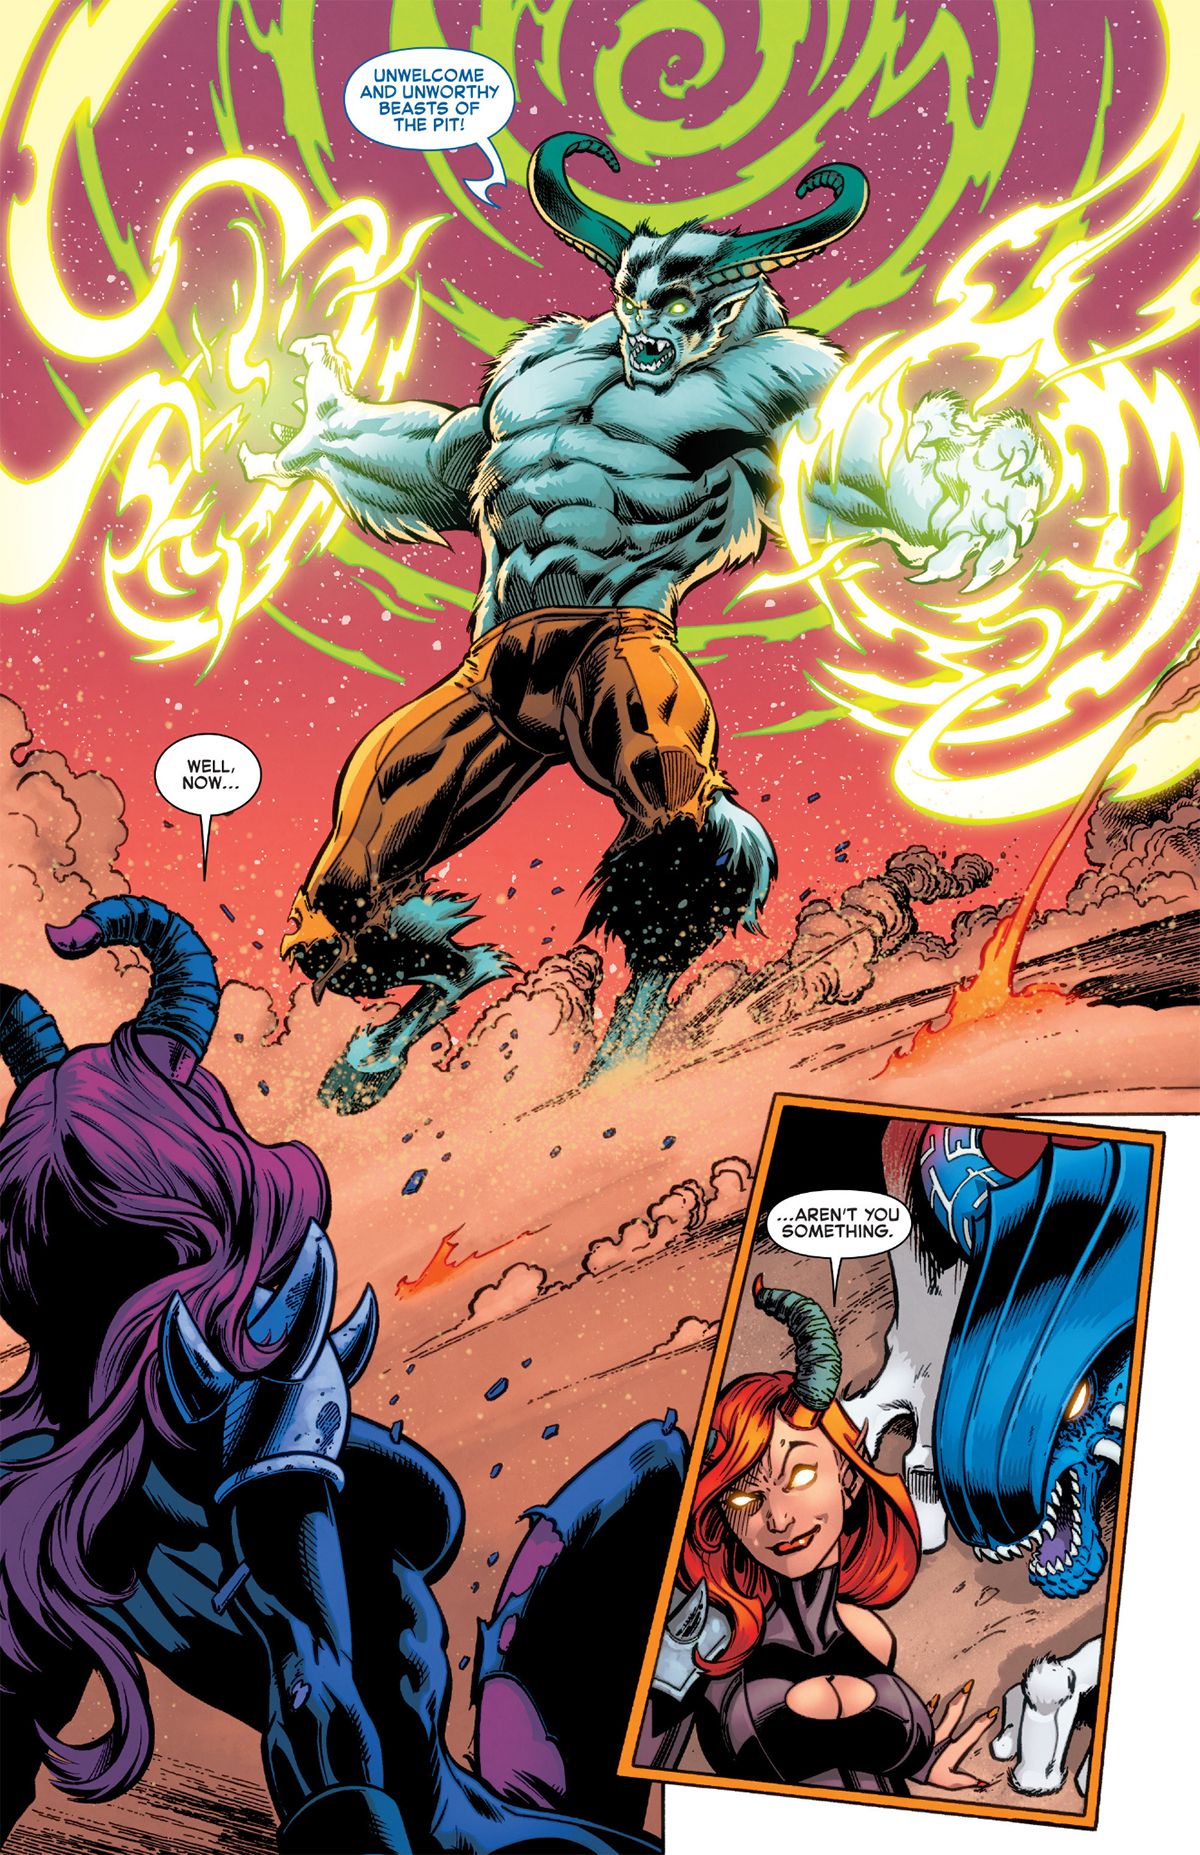 All-New X-Men #16